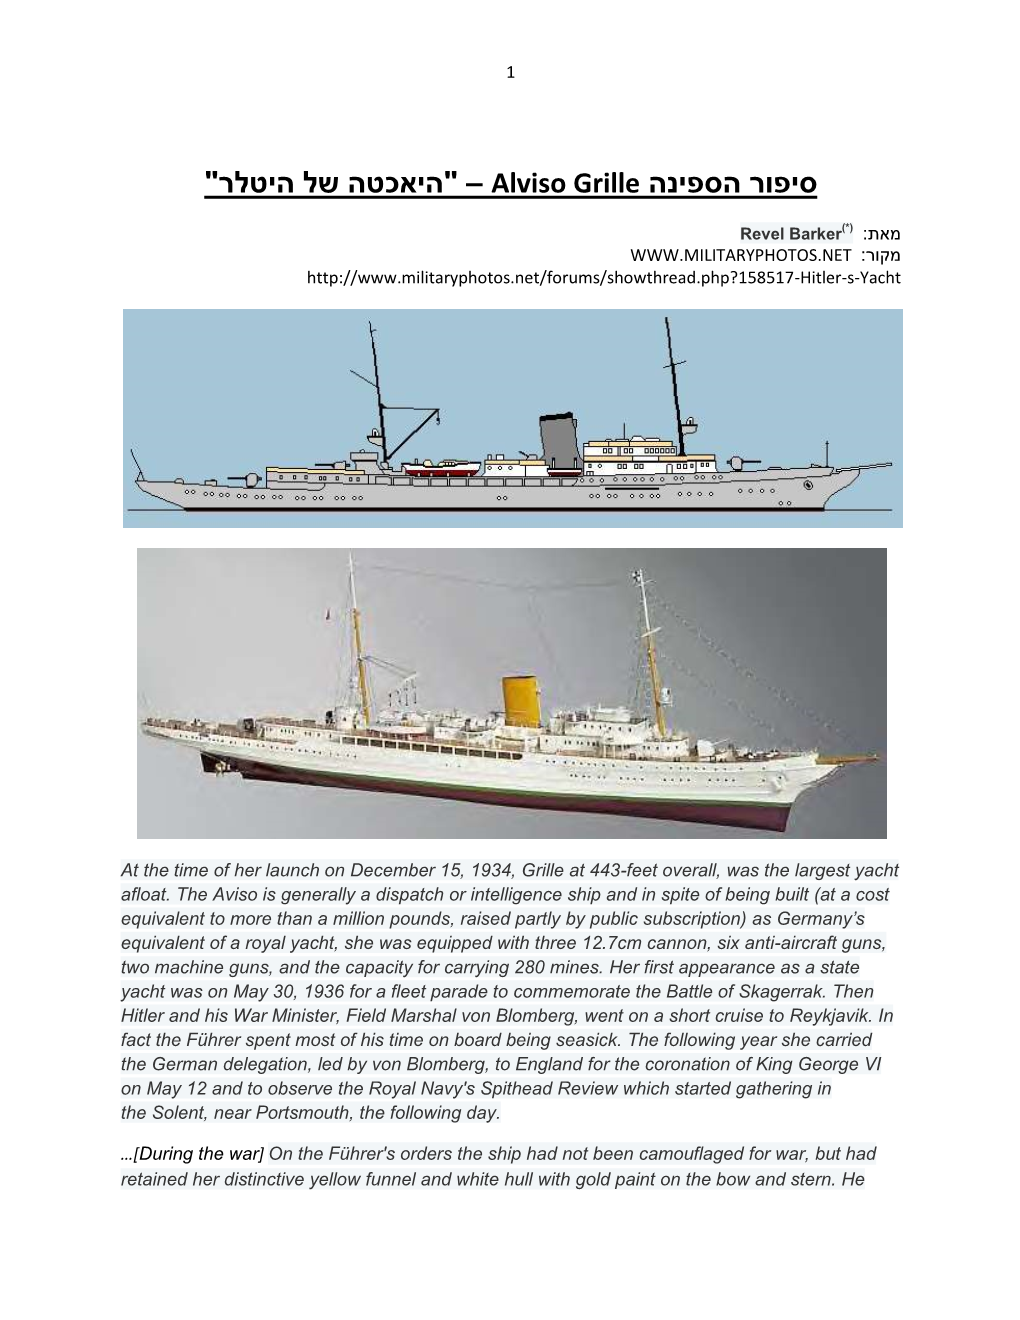 " היאכטה של היטלר " – ספינה ה סיפור Alviso Grille